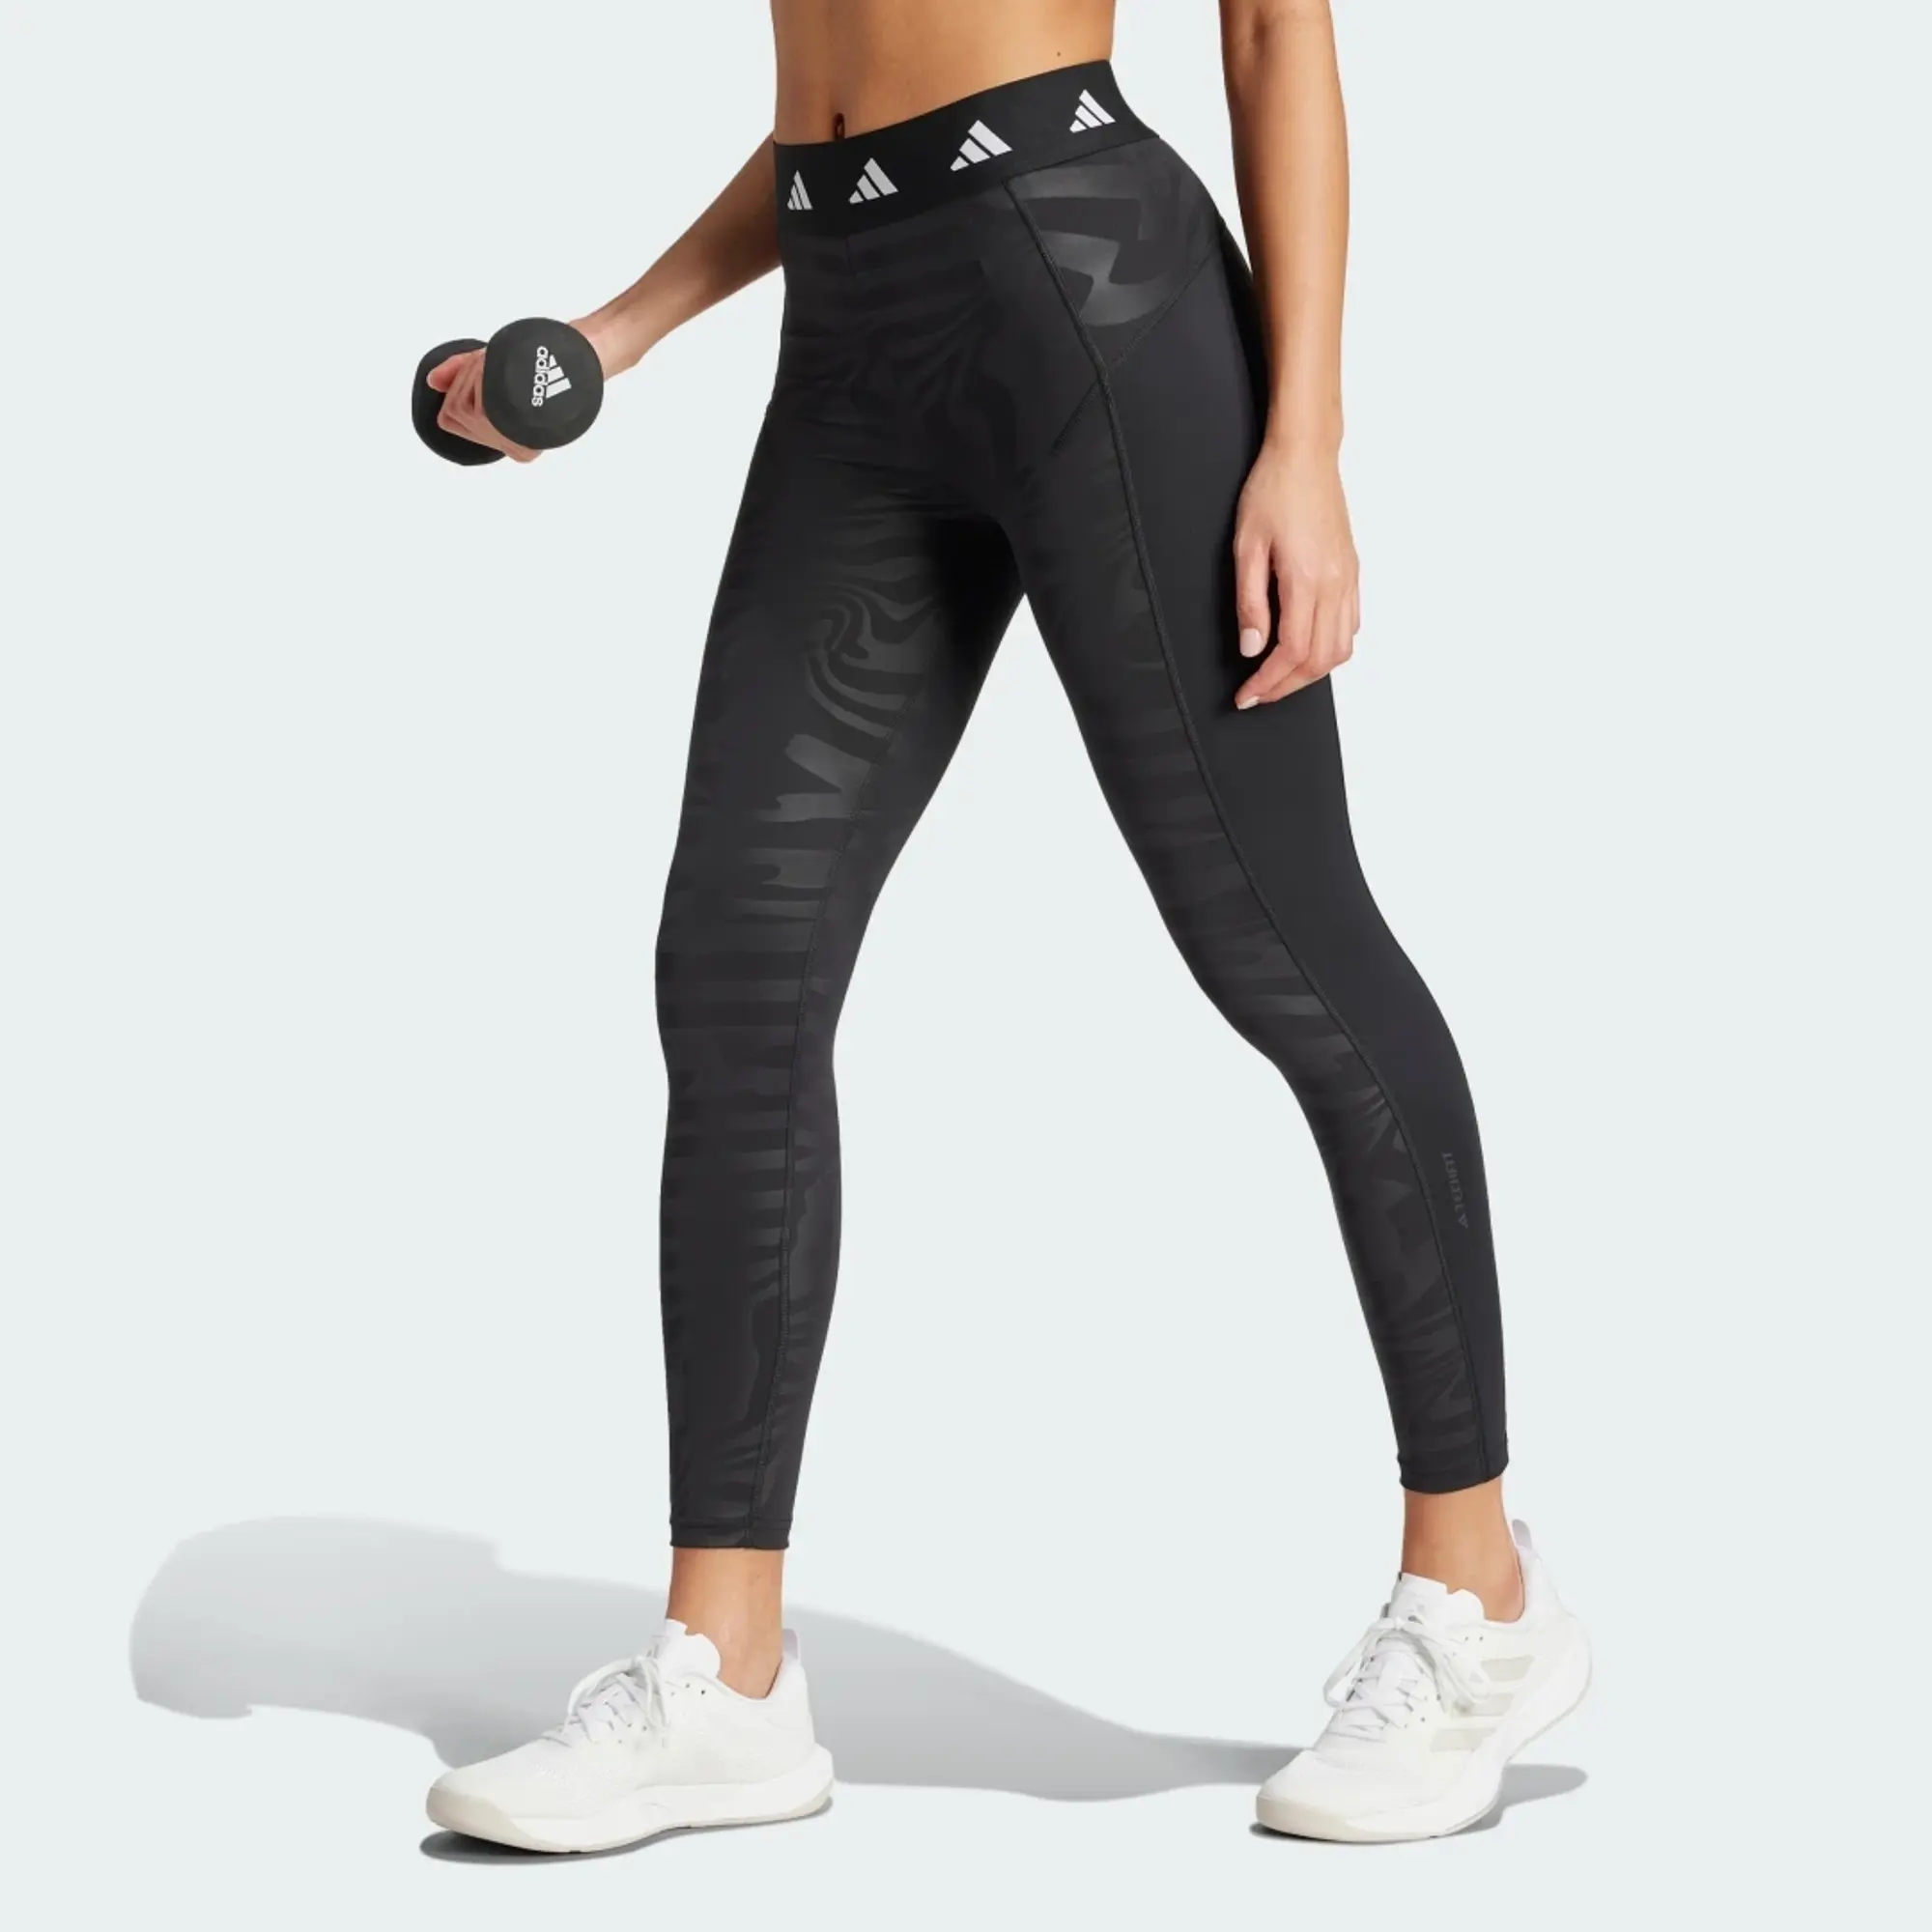 Adidas Techfit Printed Leggings 7/8 - Black, IN6879